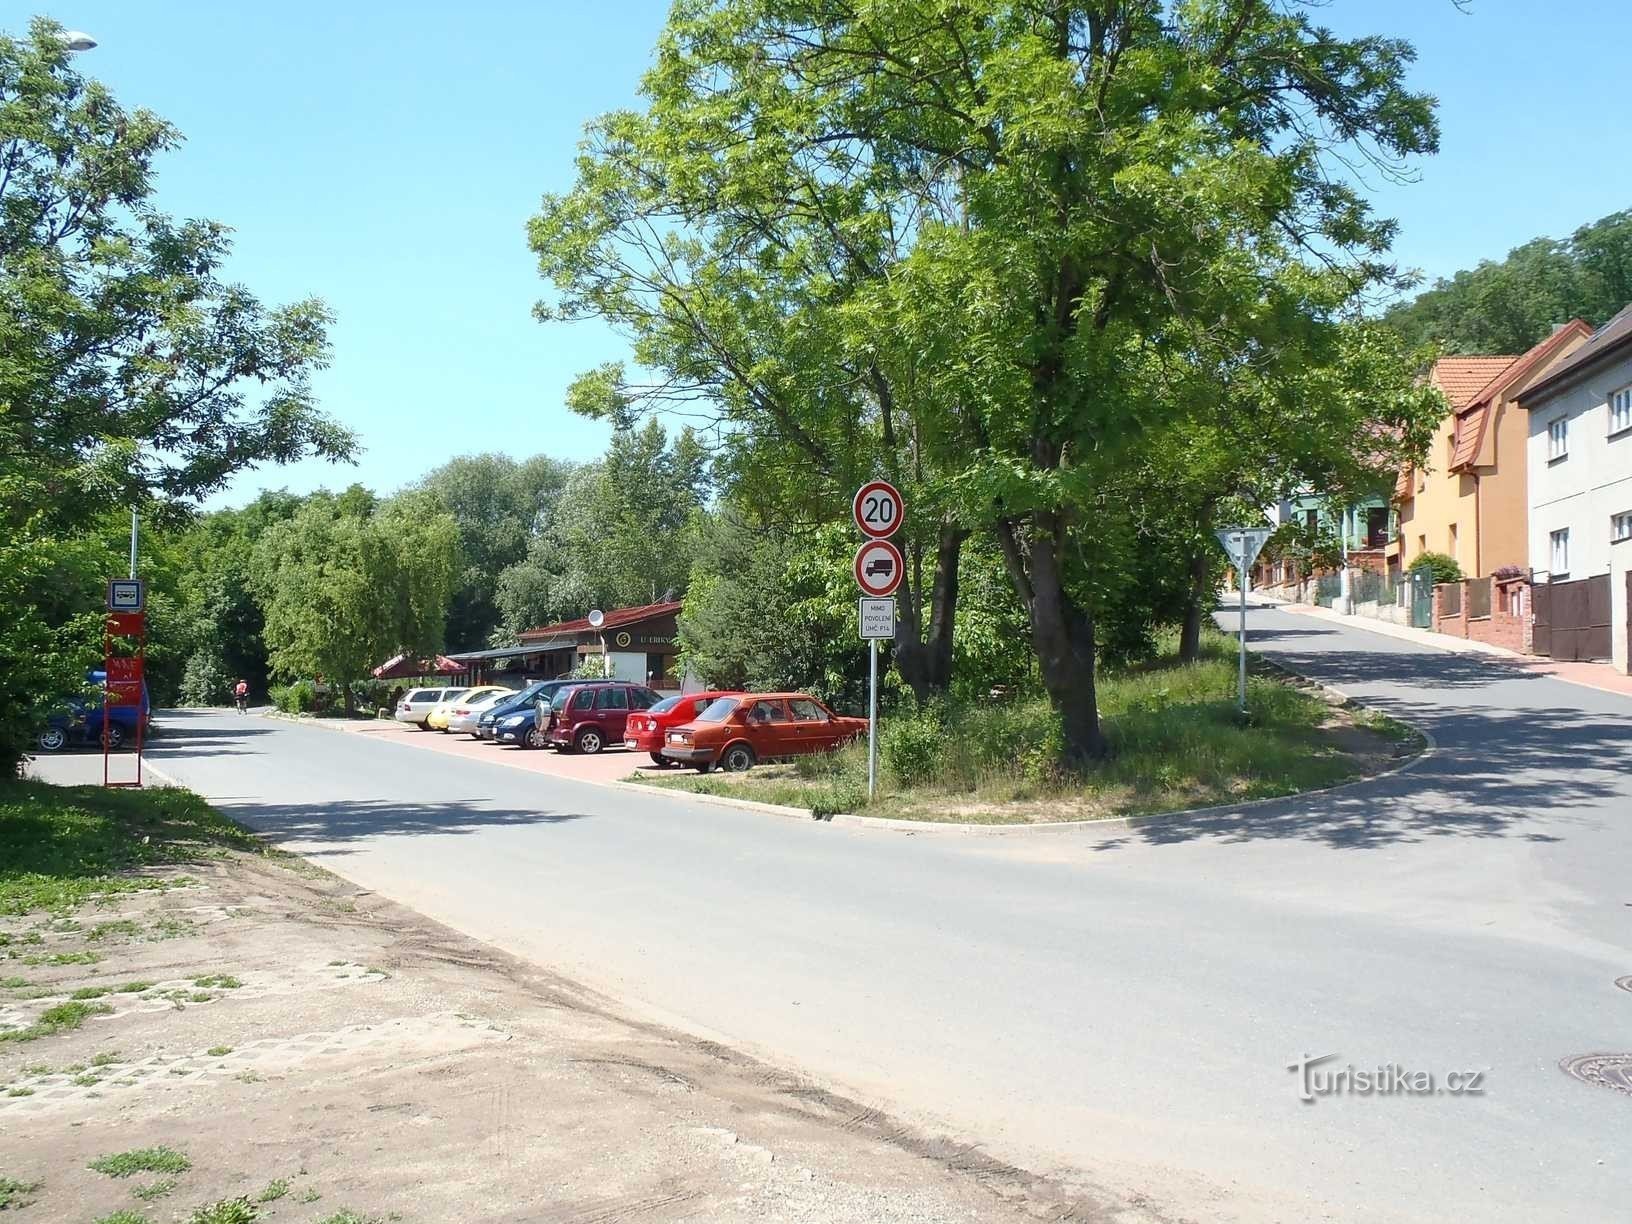 Tálinská és Lánská utcák Kyjyben - 15.6.2012